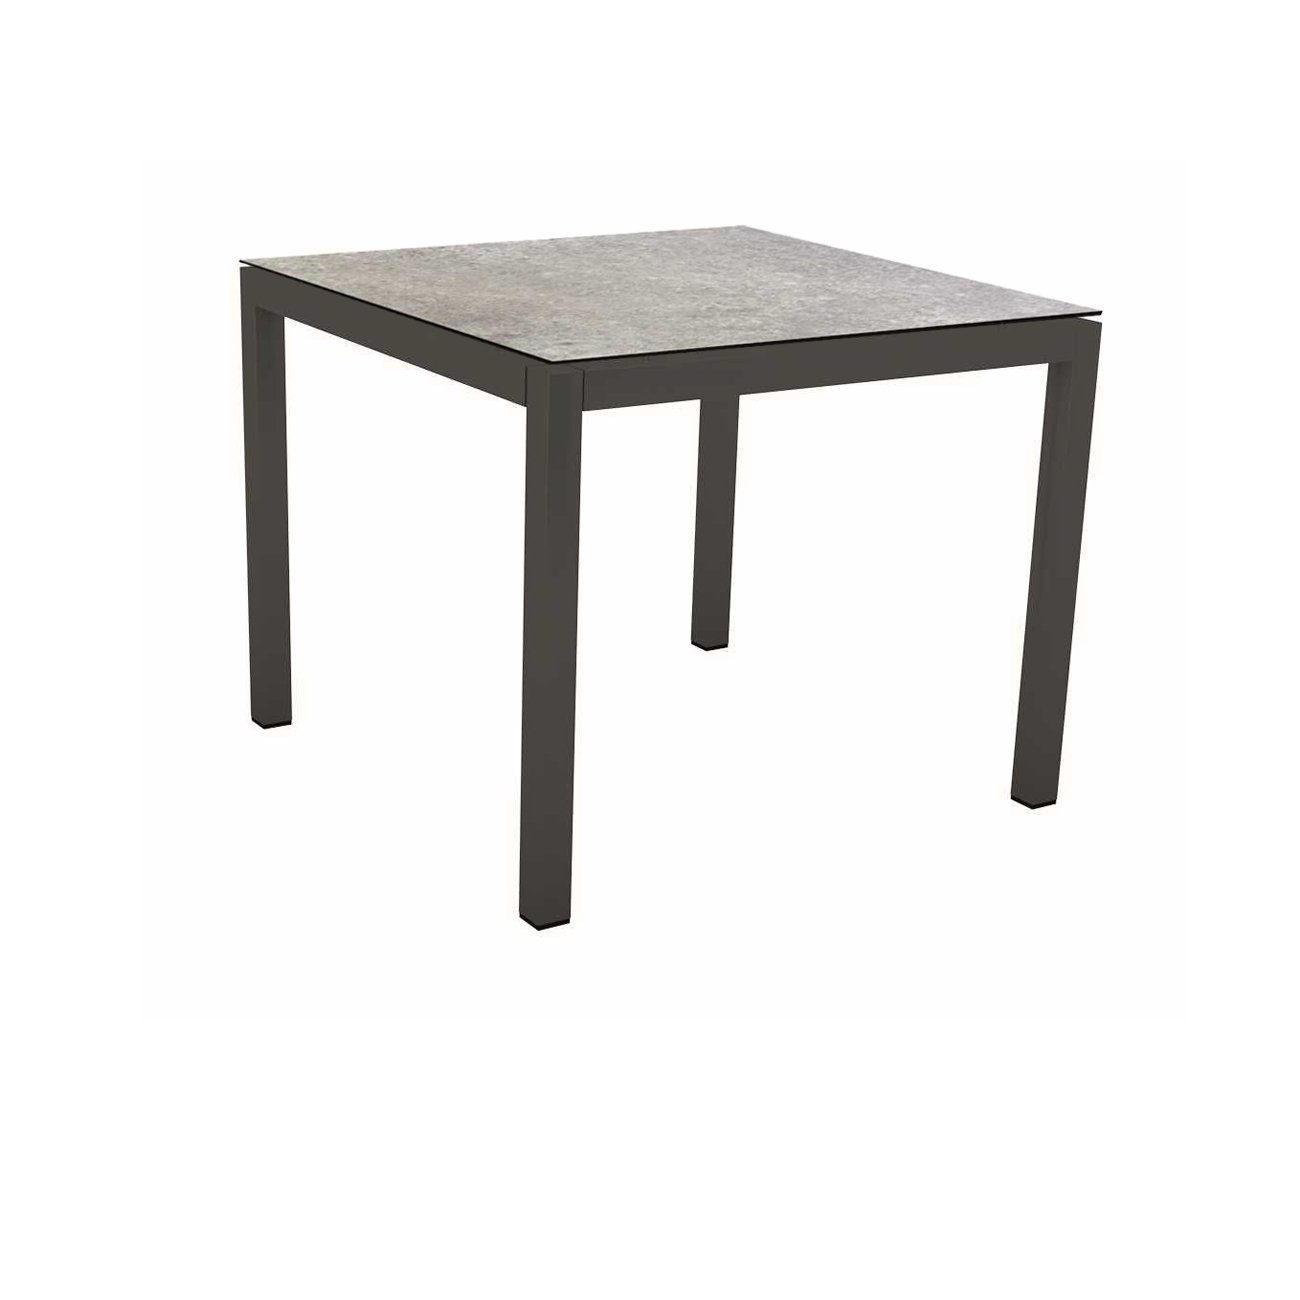 Stern Tischsystem Gartentisch, Gestell Aluminium anthrazit, Tischplatte HPL Vintage stone, Maße: 90x90 cm